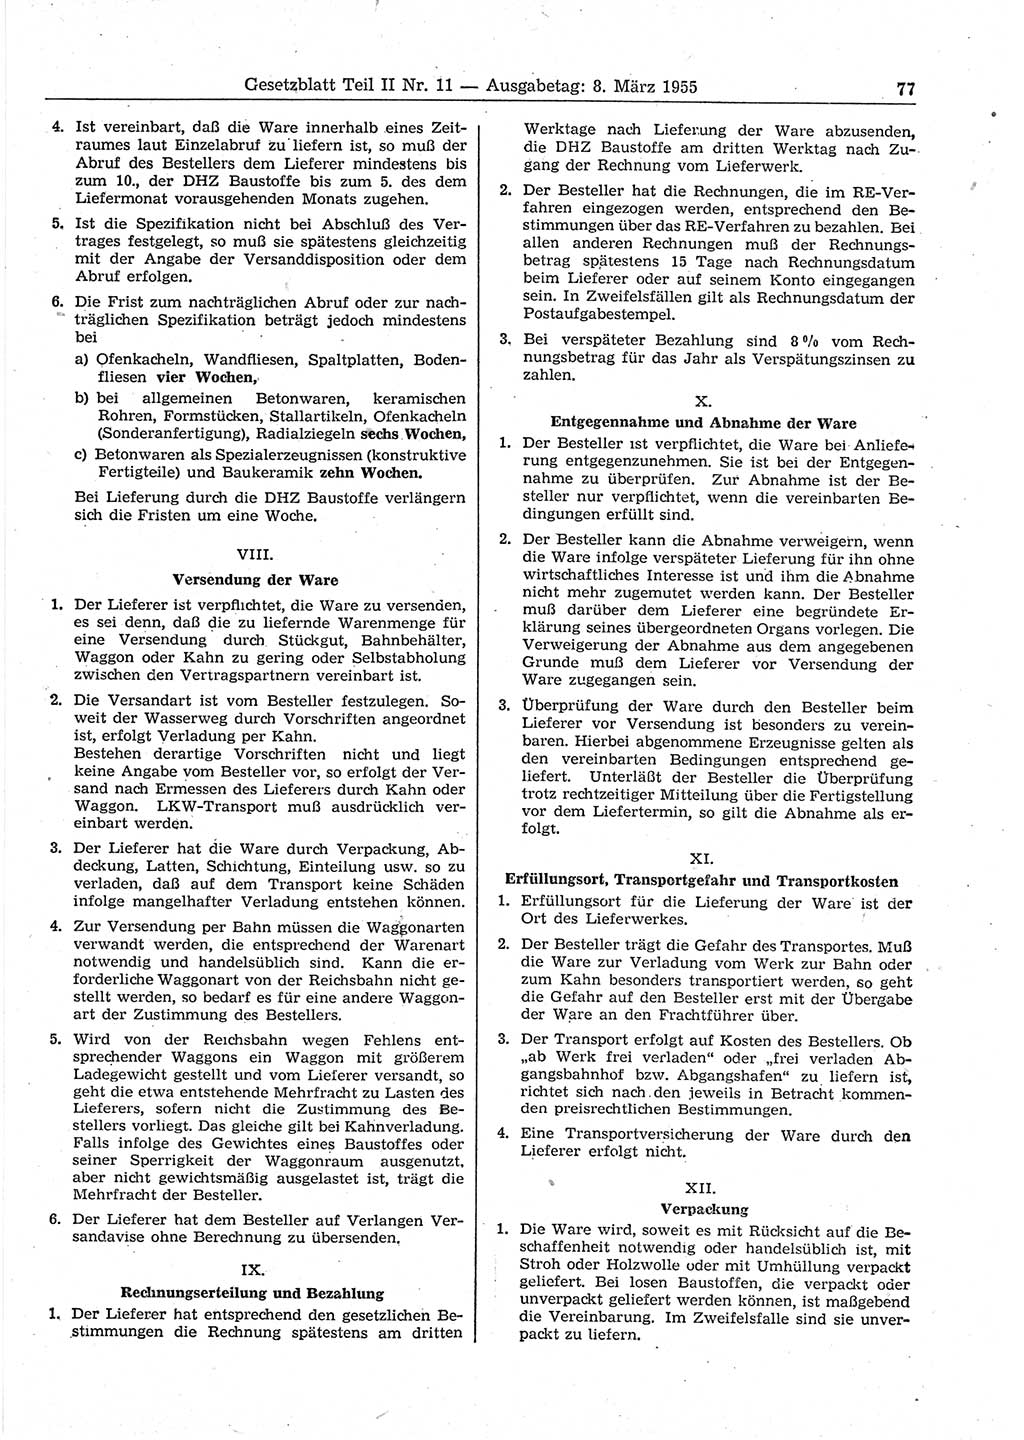 Gesetzblatt (GBl.) der Deutschen Demokratischen Republik (DDR) Teil ⅠⅠ 1955, Seite 77 (GBl. DDR ⅠⅠ 1955, S. 77)